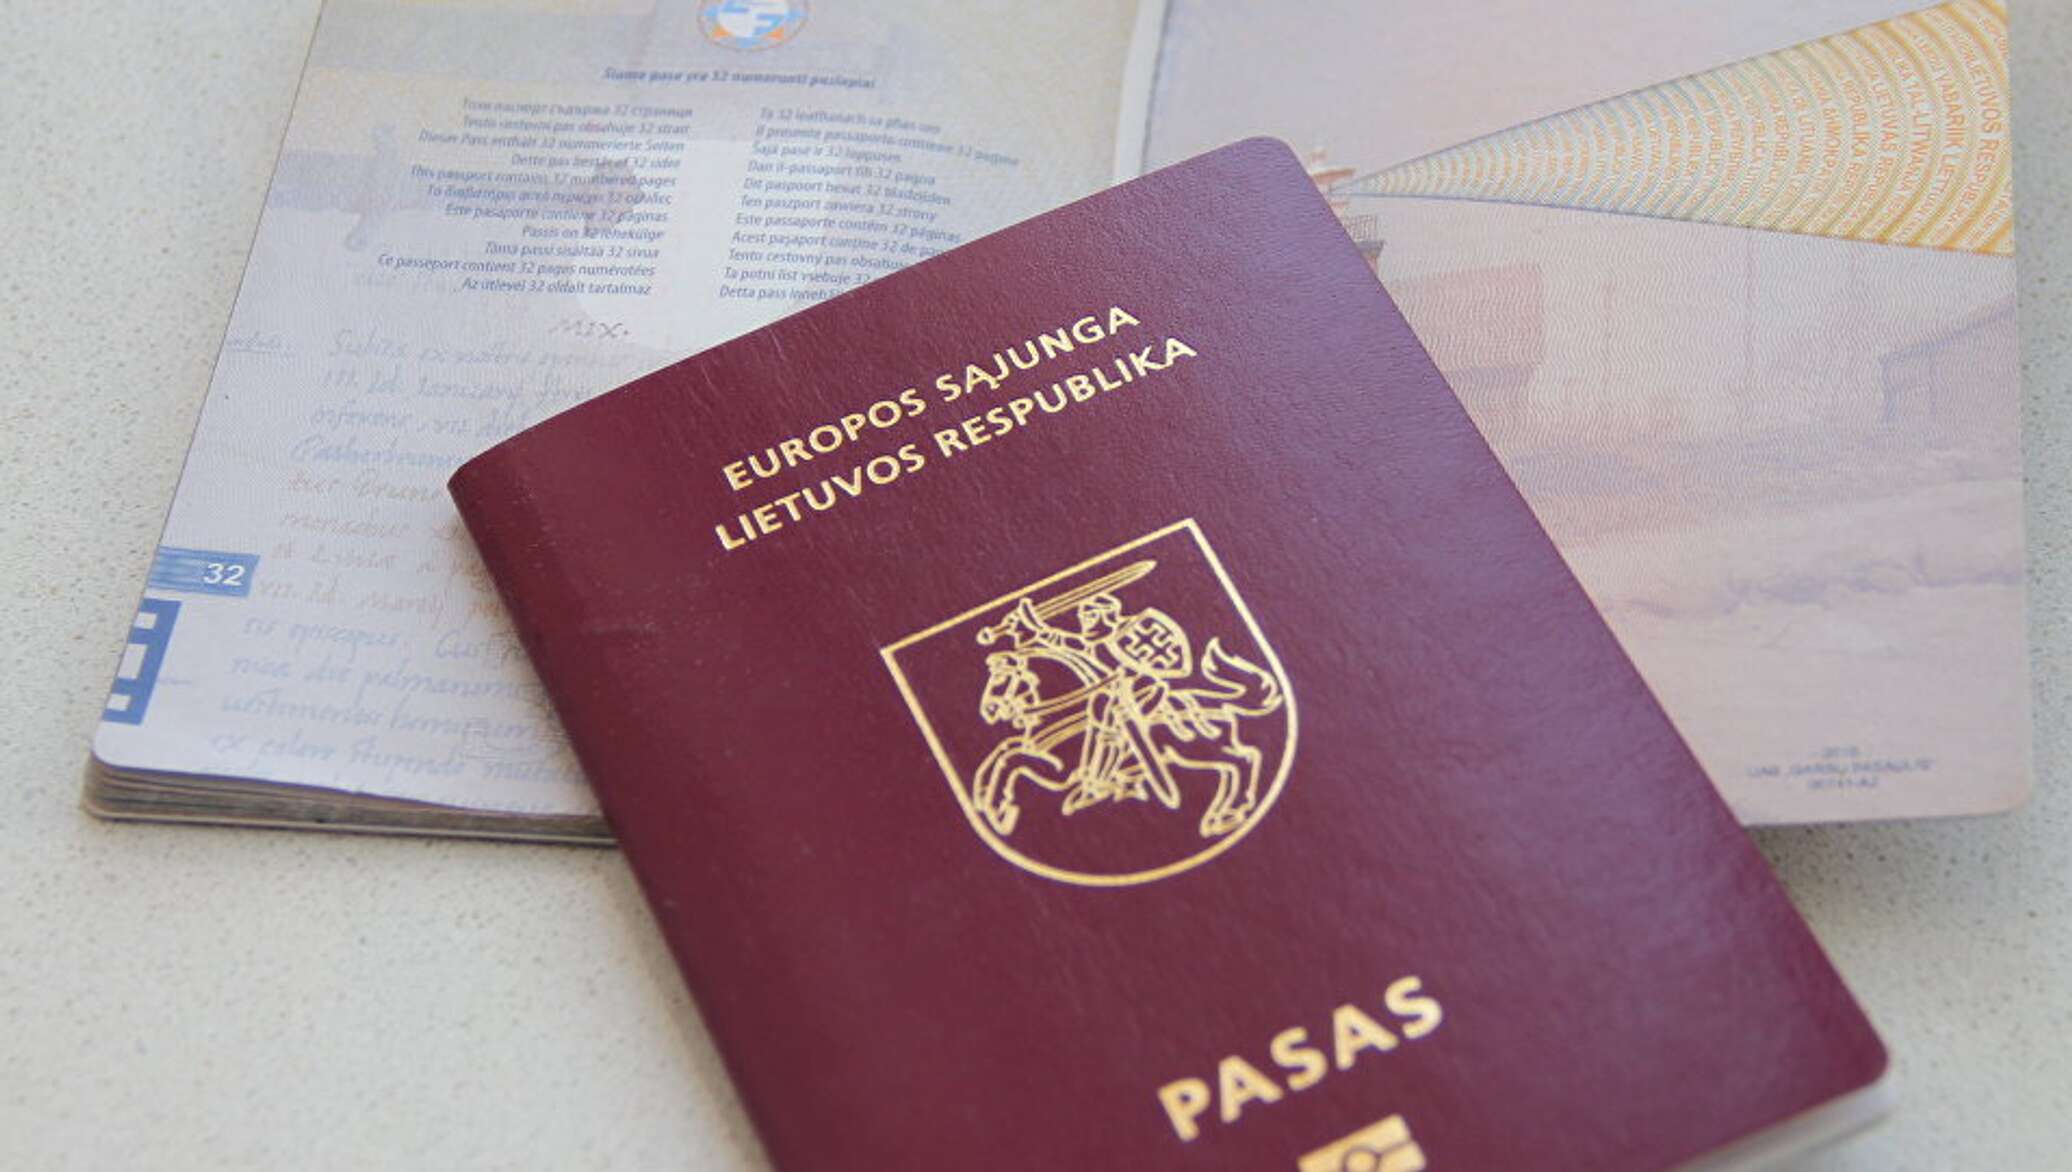 Гражданство литвы: как получить паспорт подданному рф по происхождению и рождению, через брак и родственные связи, а также условия оформления для россиян